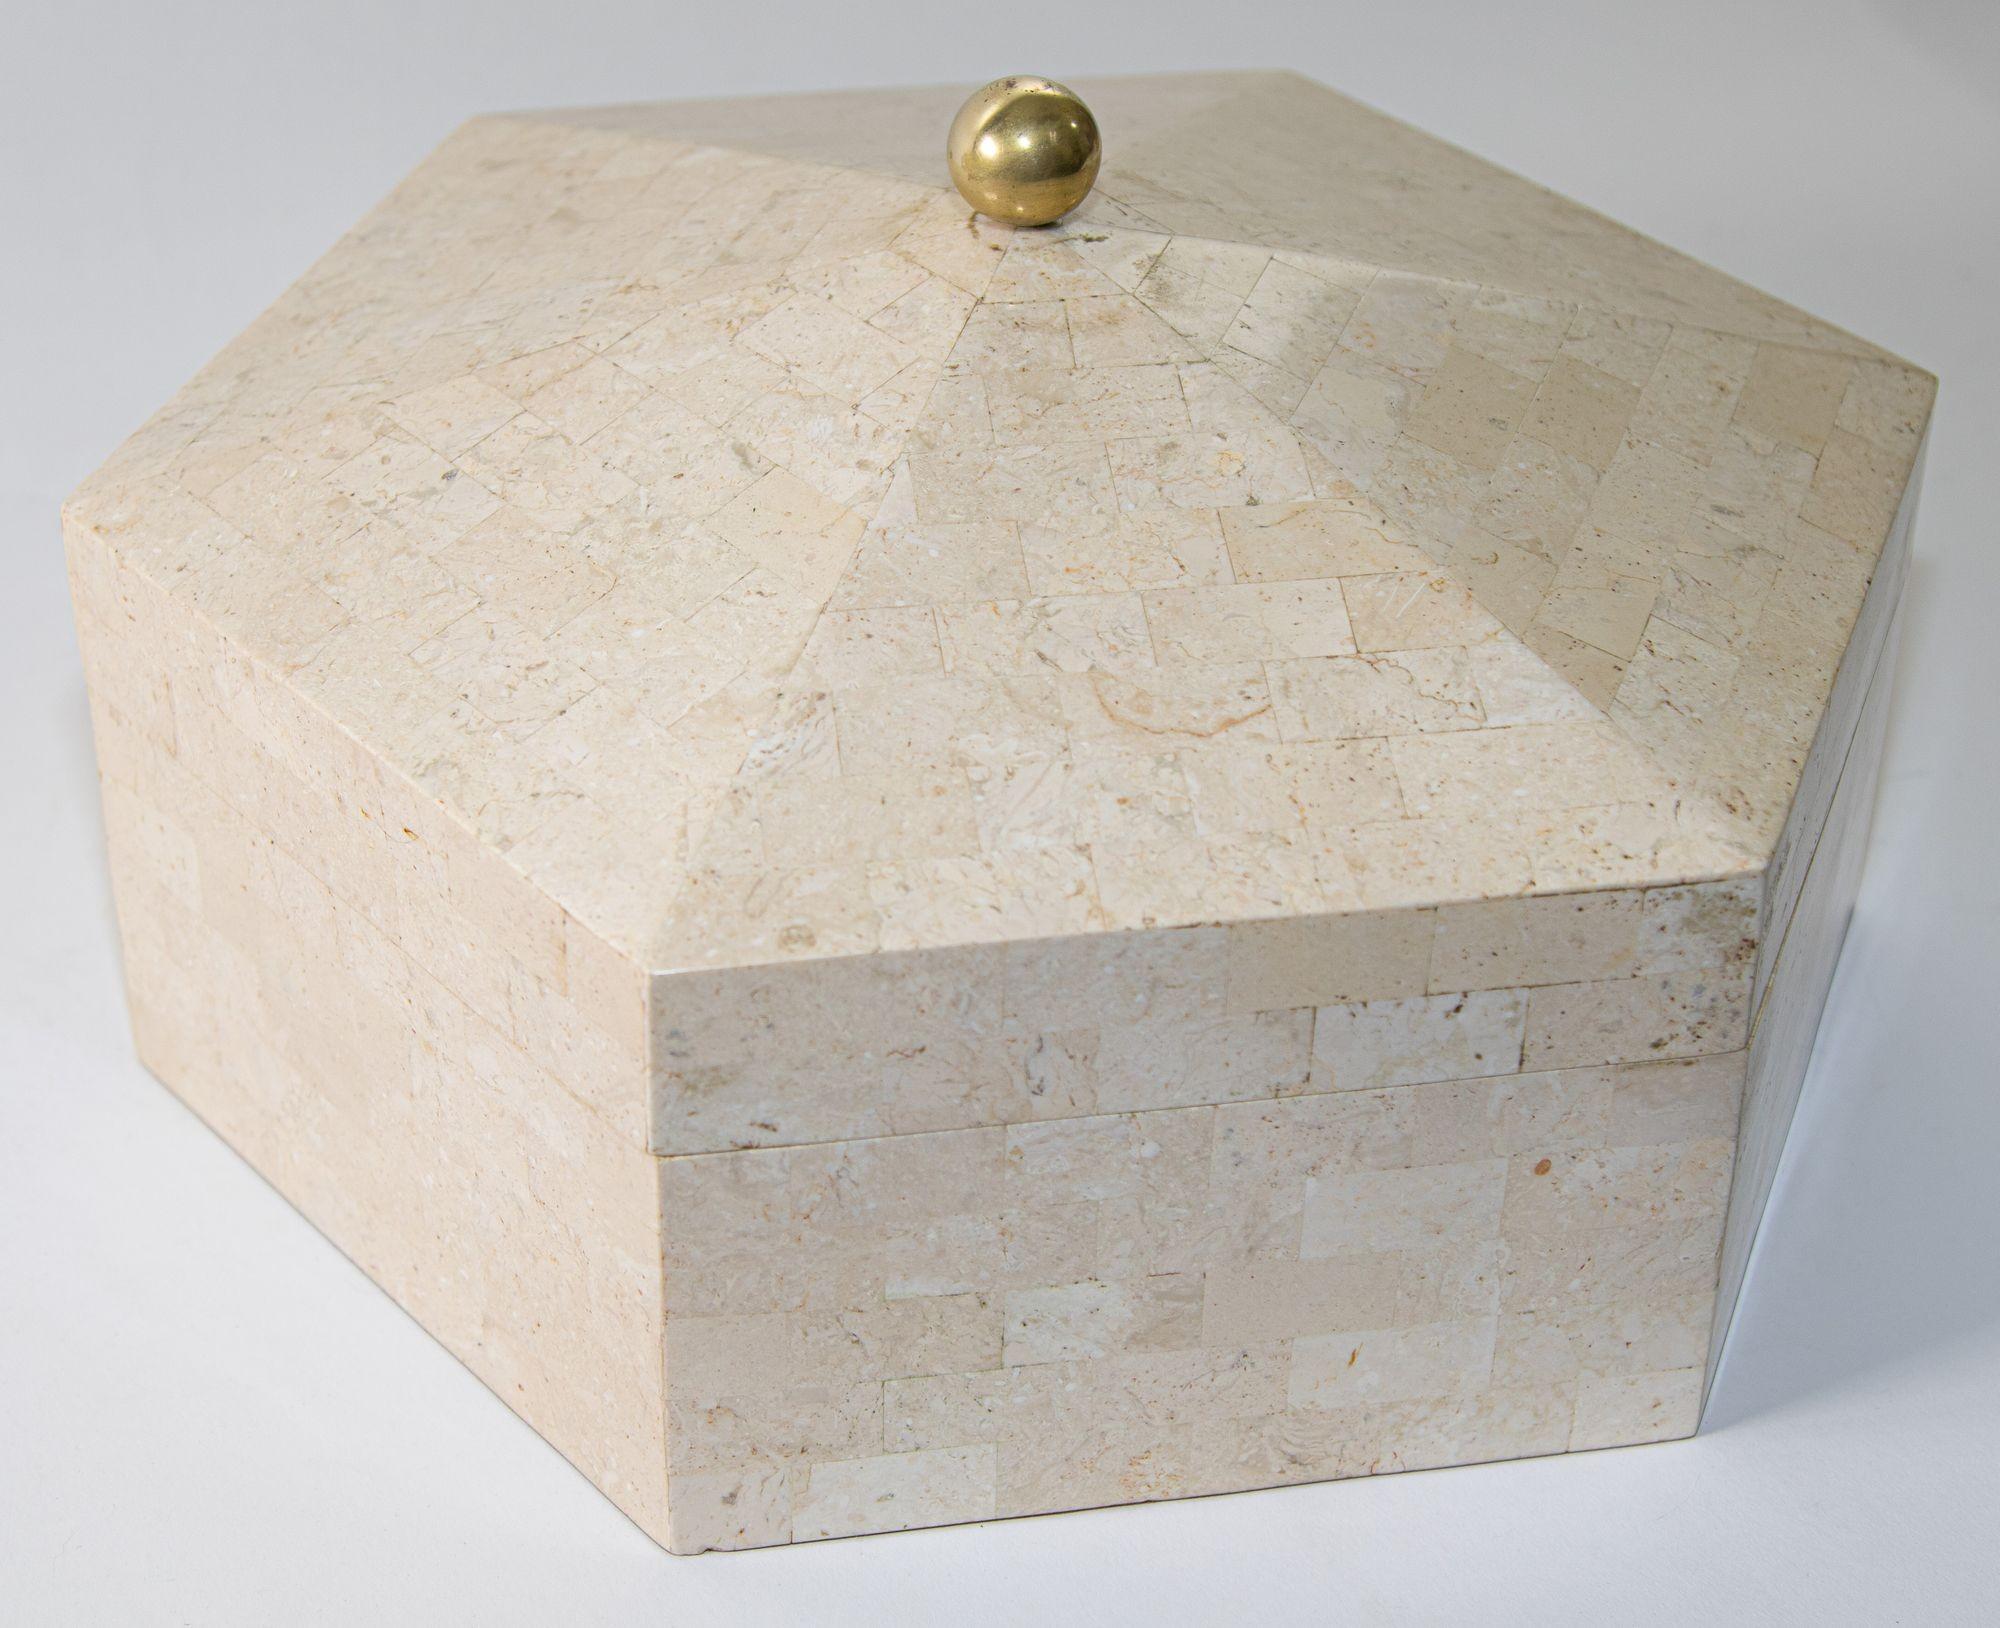 Boîte post-moderne des années 1980 Maitland Smith recouverte de marbre avec un couvercle à charnière et une tirette ronde en laiton poli sur le dessus.
Boîte décorative vintage au design géométrique postmoderne en pierre blanche tessellée et doublée